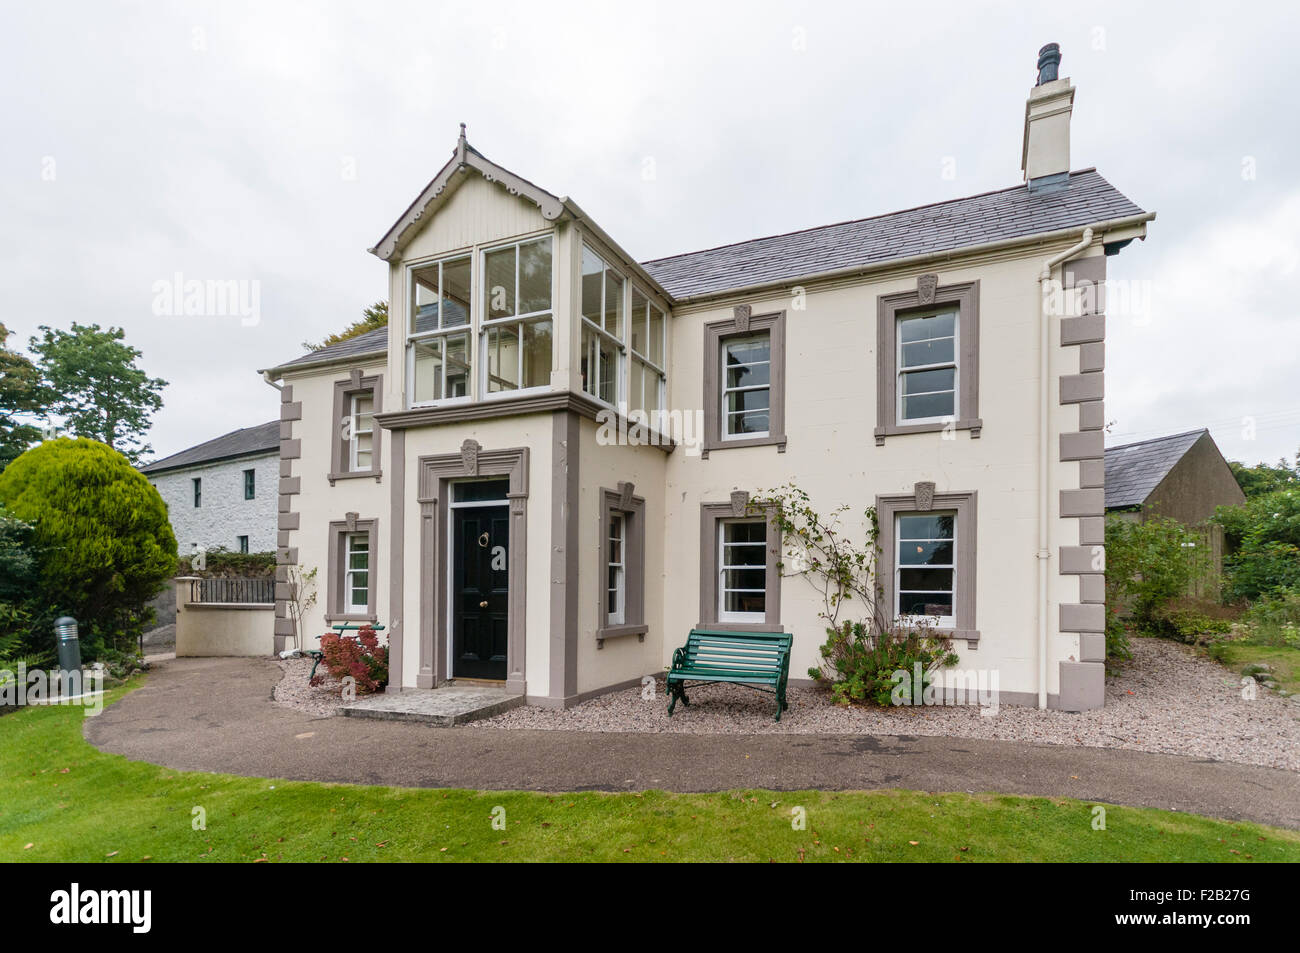 Maison historique de Sentry, Newtownabbey, Irlande du Nord. Banque D'Images